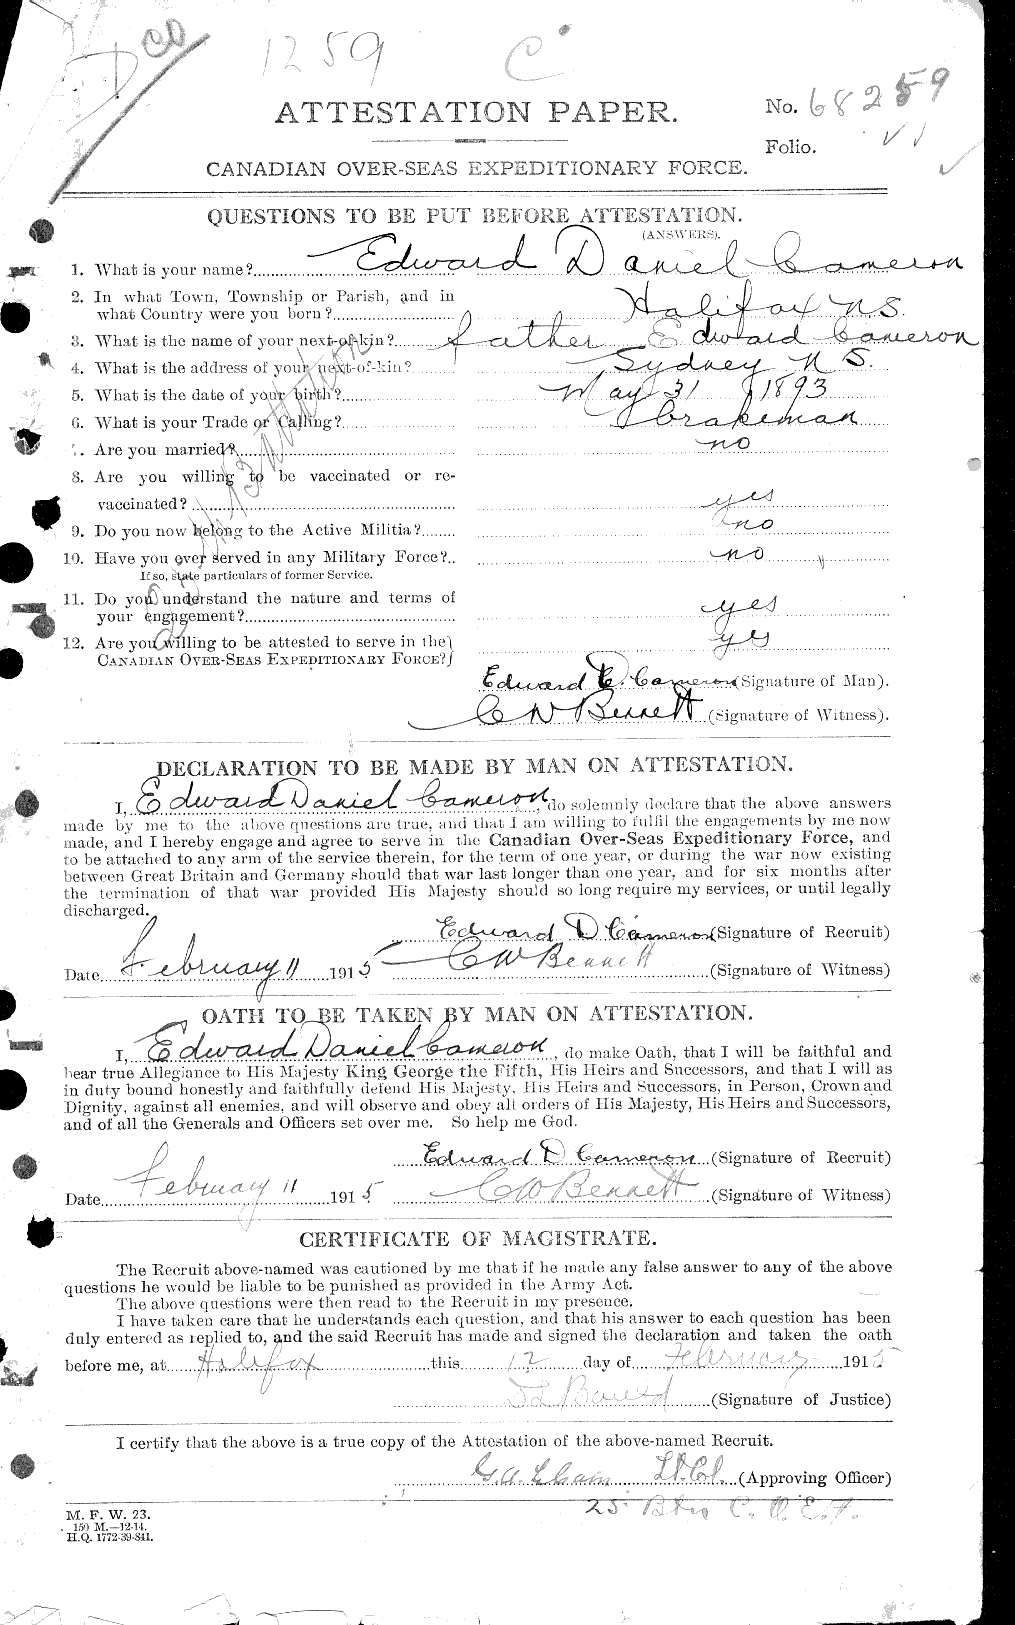 Dossiers du Personnel de la Première Guerre mondiale - CEC 006524a